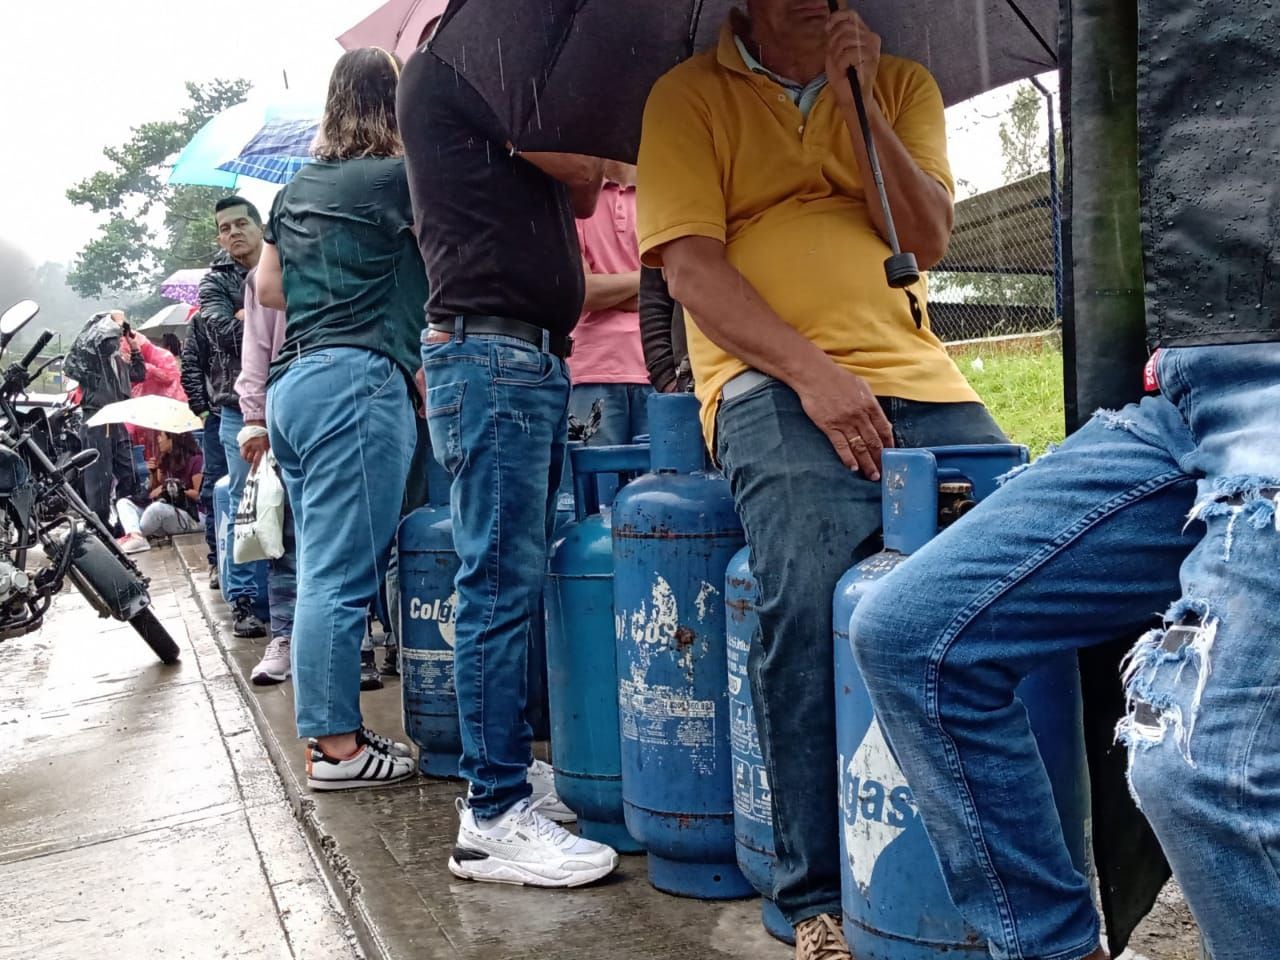 Compra de gas propano en Manizales